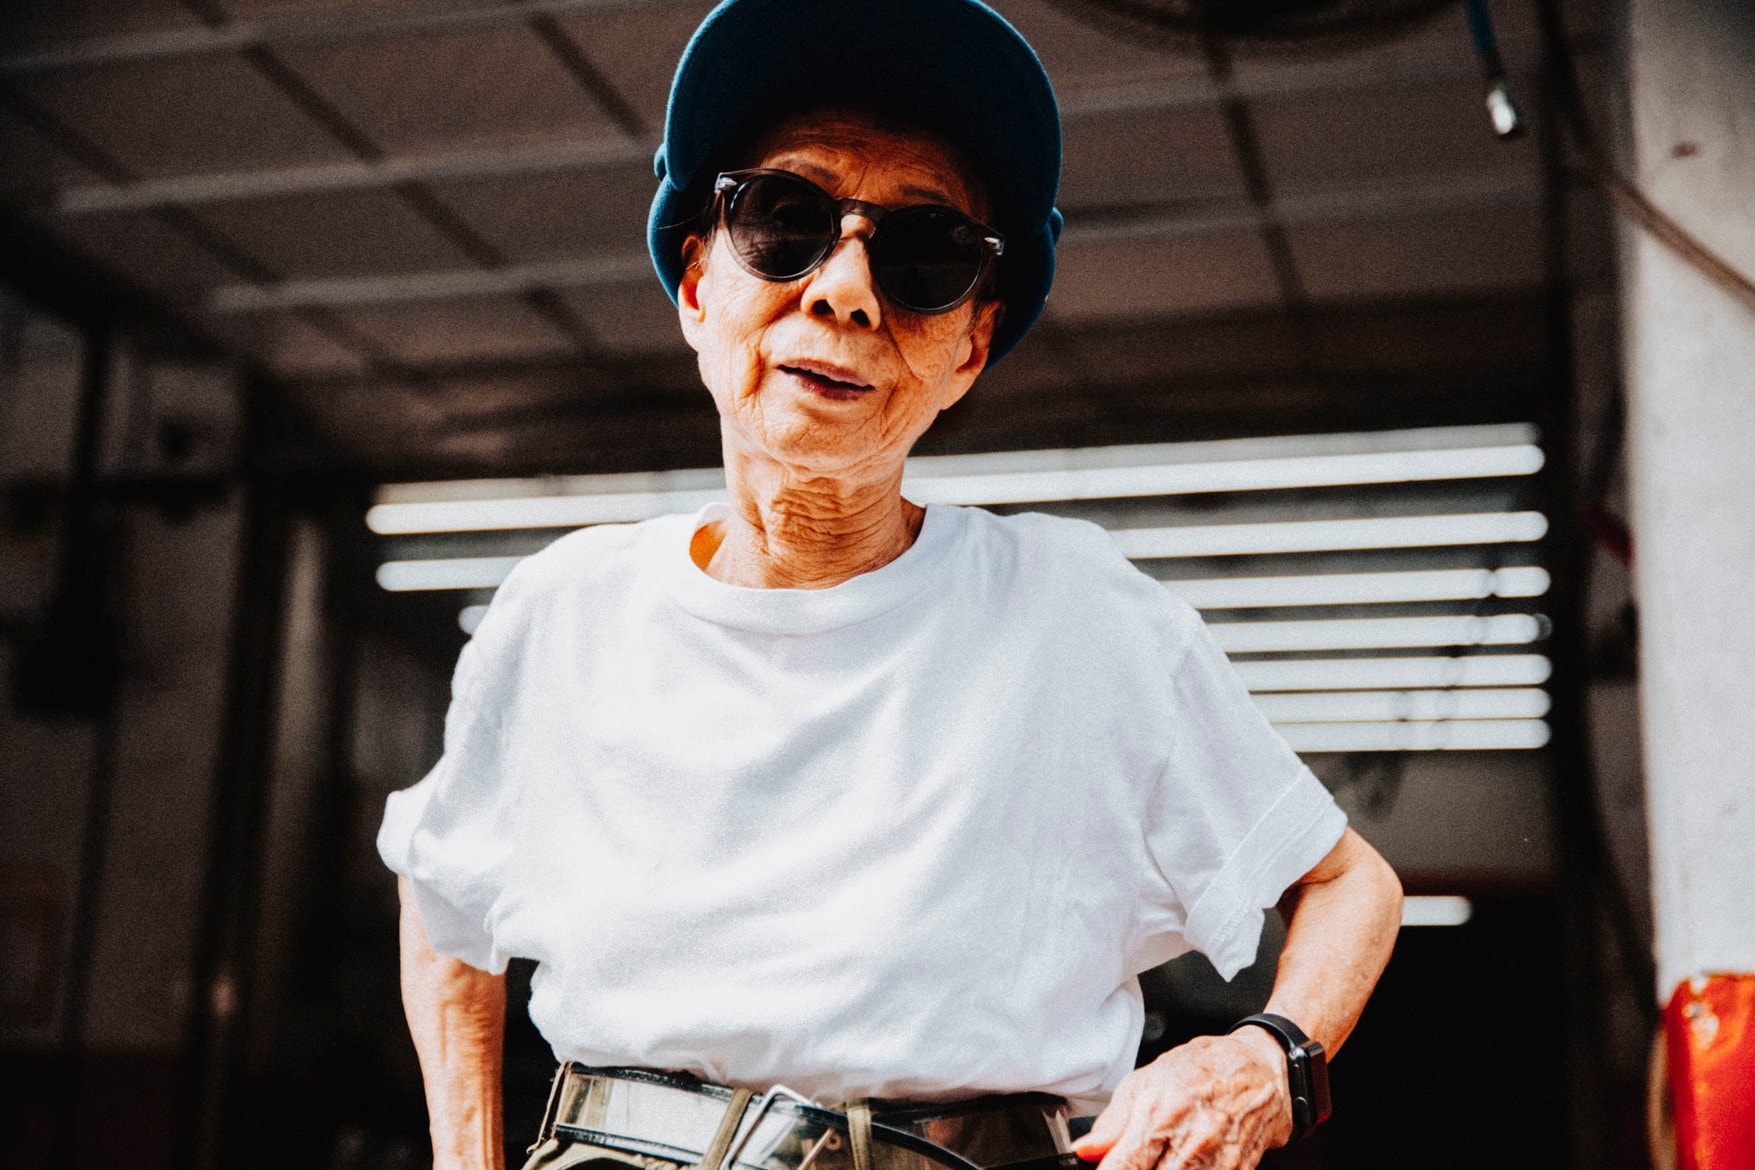 Interviews：90歳を迎えた台湾のストリートクイーン ムーン・リン 〈Supreme〉や〈Y-3〉を自由自在に着こなすファンキーなお婆ちゃんのファッションへ対する想いとは Instagramでご存知の方も多いであろう、90歳の卒寿を迎えたMoon Lin（ムーン・リン）は、64歳で活躍するスケートボーダーのLena Salmi（レナ・サルミ）のようにストリートウェアには年齢制限があるという考えを無視し、独自のファッション論を展開し人生を謳歌している。彼女に注目するおよそ94,000人のフォロワーは、Linが行う〈Supreme（シュプリーム）〉や〈Y-3（ワイスリー）〉のようなアイテムを日々のファッションに取り入れる比較的簡単でやりやすいミックススタイリングに魅力を感じている。先日『HYPEBAE』によって行われた、彼女の趣味趣向や彼女の持つ影響力について、また、ライフスタイルを深く掘り下げた彼女へのインタビューを紹介しよう。  ー 新しいファッションを見つけることに感動することはありますか？  わたしにとって、わたしのスタイルは特別“ファッショナブル”というわけではありません。私は90歳で、ある意味それが全て。だから私はやりたいことをその時にしたいし、快適な服や好きな色、好きなスタイルで洋服を着たいと思っていますよ。周りの人が何を思っているかの心配は全くしません。自分が着たいから着る、ただそれだけなんです。   ー モチベーションの一環としてのソーシャルメディアについて、何か想うことはありますか？  そうですね。わたしは、朝起きて自分自身を写真に撮って記録することに面白みを感じています。80代半ばになったときに、起きるのも億劫で、体調のこともありますし部屋で静かにしていたいと思っていました。でも自分自身がドレスアップする方法を学んだ後は、欲しいものへの欲求やそれを身につける楽しみが朝目覚めた時の興奮材料やモチベーションになったんです。そうですね、やっぱり好きな服で自分を着飾って写真を撮るのが好きですね。   ー どんなブランドをチョイスしますか？  私は〈Supreme（シュプリーム）〉、〈PUMA（プーマ）〉、〈Nike（ナイキ）〉、〈adidas（アディアダス）〉のような西洋のブランドが基本的に好きです。でも、今注目していて今後サポートしていきたいと思っているのが、〈A A Stairs（以下ALT）〉や『Plain-Me』のような台湾のブランド。〈ALT〉についてはすごく好きなのですが、理由としては台湾の若者によって設立され、そのブランドの持つ魅力によって人気が高まりシーンを盛り上げているから。私は若い頃に食料品の店を持っていましたが、生計をたてることは簡単ではない。何かを作り、それを成し遂げ、軌道にのせることは難しいことです。大きなブランドを育てるためには大きな努力をしなければなりません。ですから尊敬しますし、サポートもしたいと思っています。  ー あなたのインスピレーション源を教えてください。  私にインスピレーションを与えてくれていた人々はみんな天国に行きました。Teresa Teng（テレサ・テン）のような美しさを持ち、勤勉で若くエネルギッシュで、常に注目していたい若手スターも何人かいます。例えば、Justice Lin（ジャスティス・リン）。彼のライフスタイルは魅力的で、理想的な家族の姿をしているのではないかしら。彼の子供たちもとてもかわいくて常に注目してしまう。他にはTing Yang（ティン・ヤン）という少し難しいけれど面白い少女など、とにかくインスピレーションを与えてくれる人は沢山います。  Linのインタビュー全文を読みたい方は、是非『HYPEBAE』までアクセスしてみてほしい。  ちなみに、〈Supreme〉の2018年秋冬コレクションで特に注目されているアイテムを調査した『SupremeCommunity』のアンケート結果はもう確認済み？